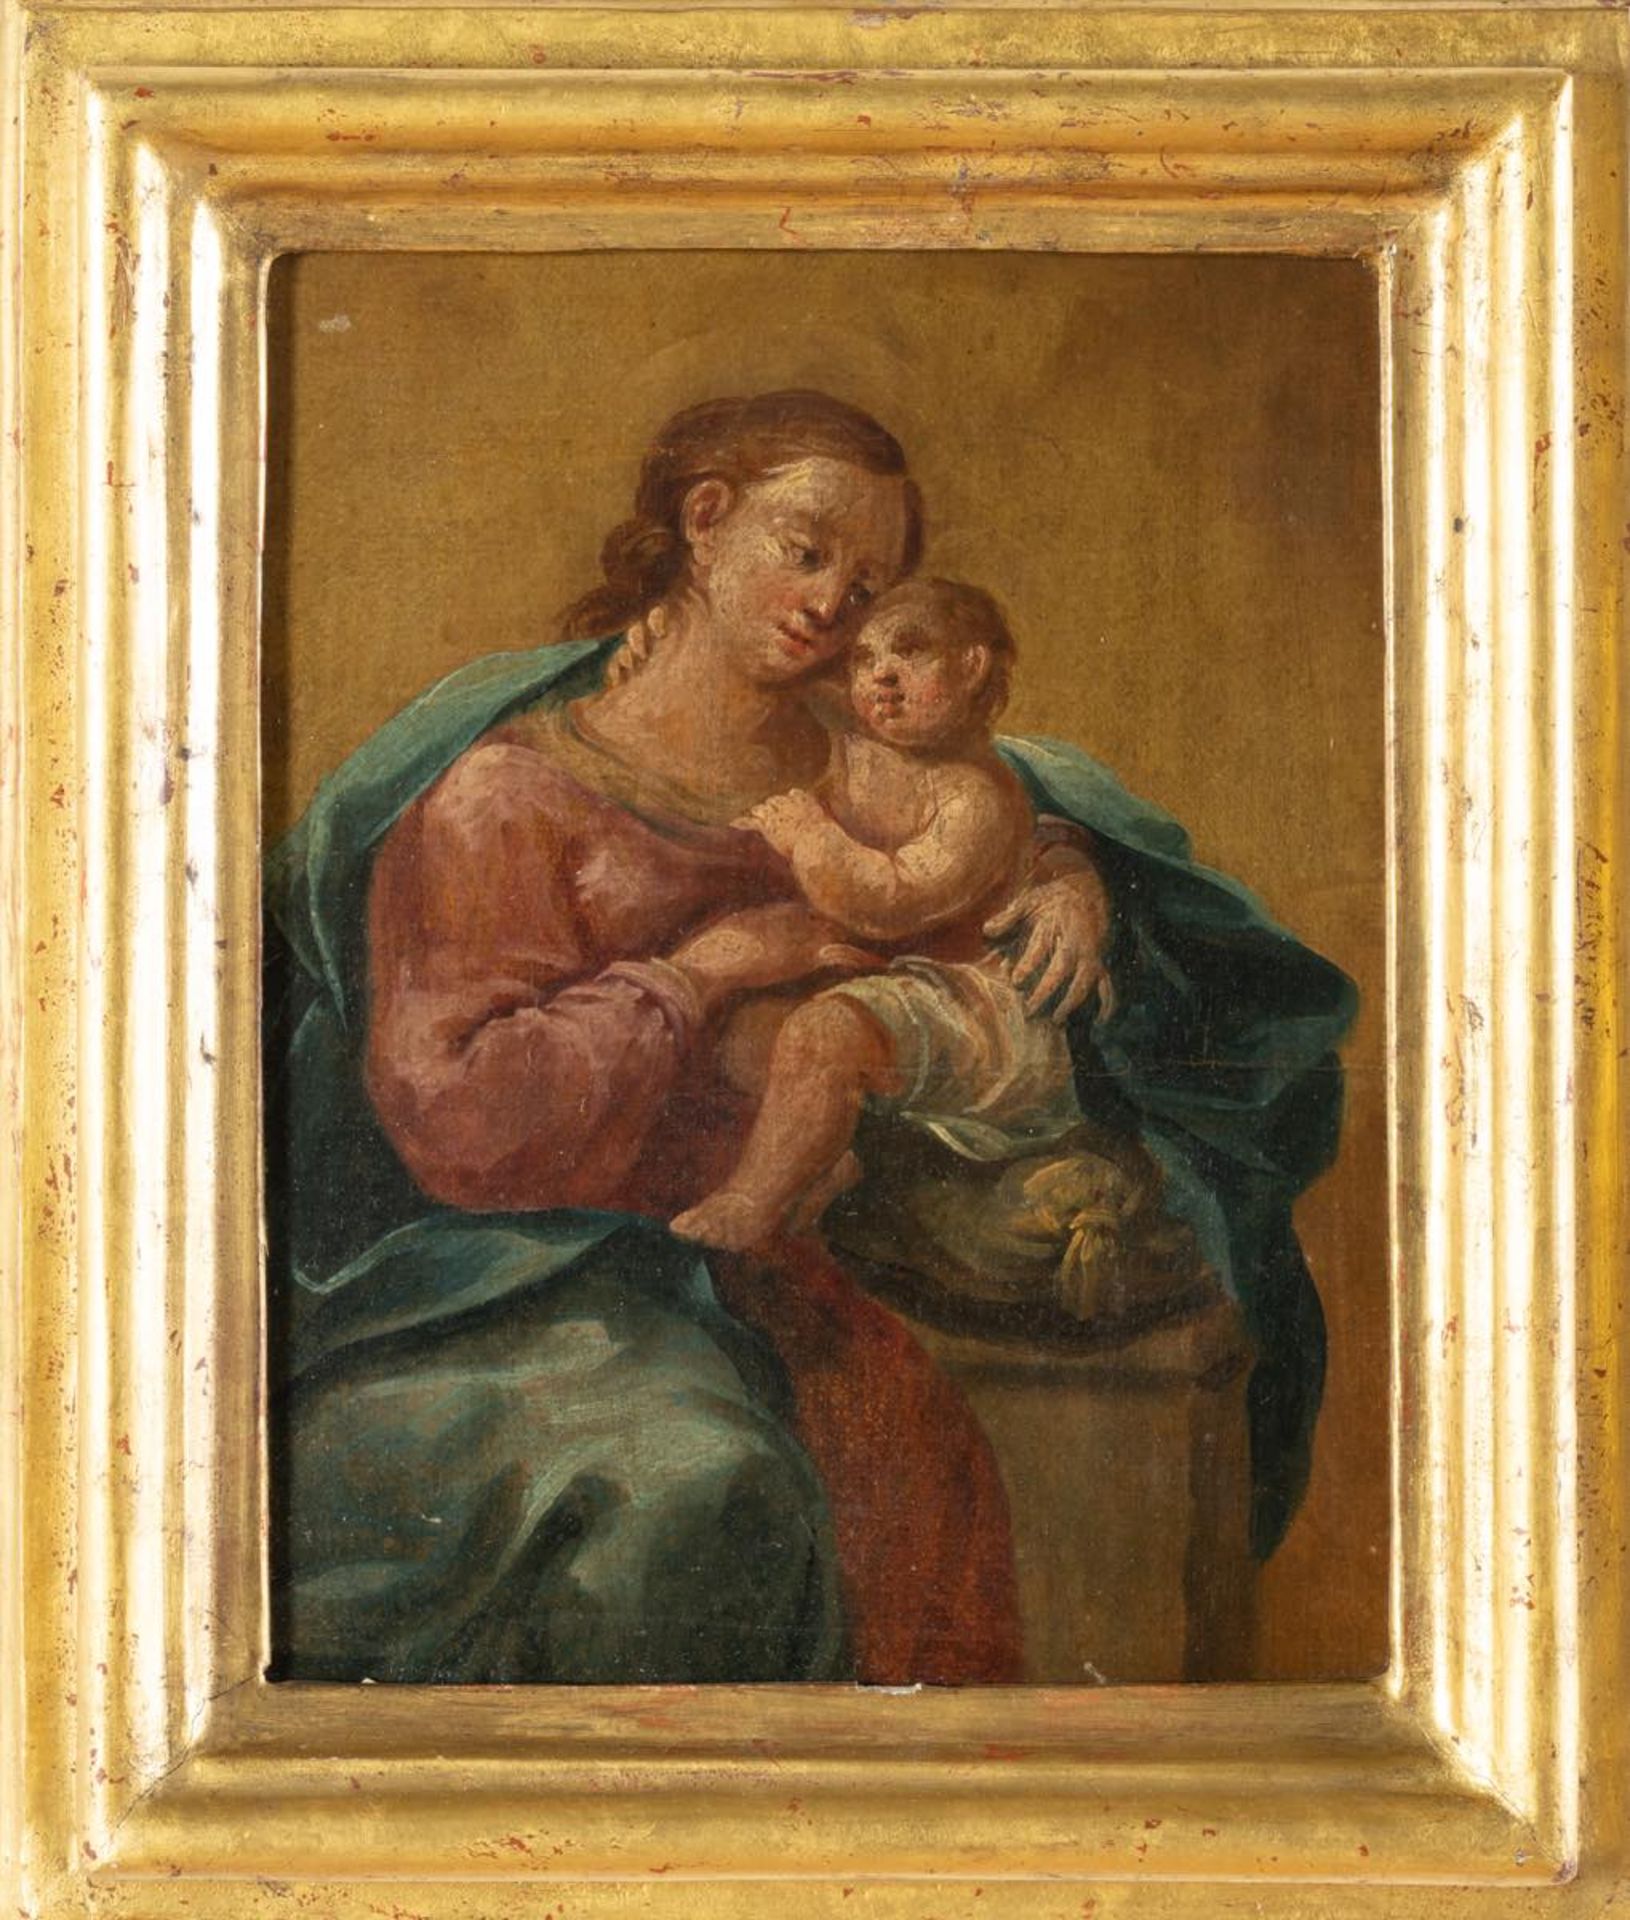 Maestro del XVIII secolo, “Madonna con Bambino”. Olio su tavola, H cm 26x21